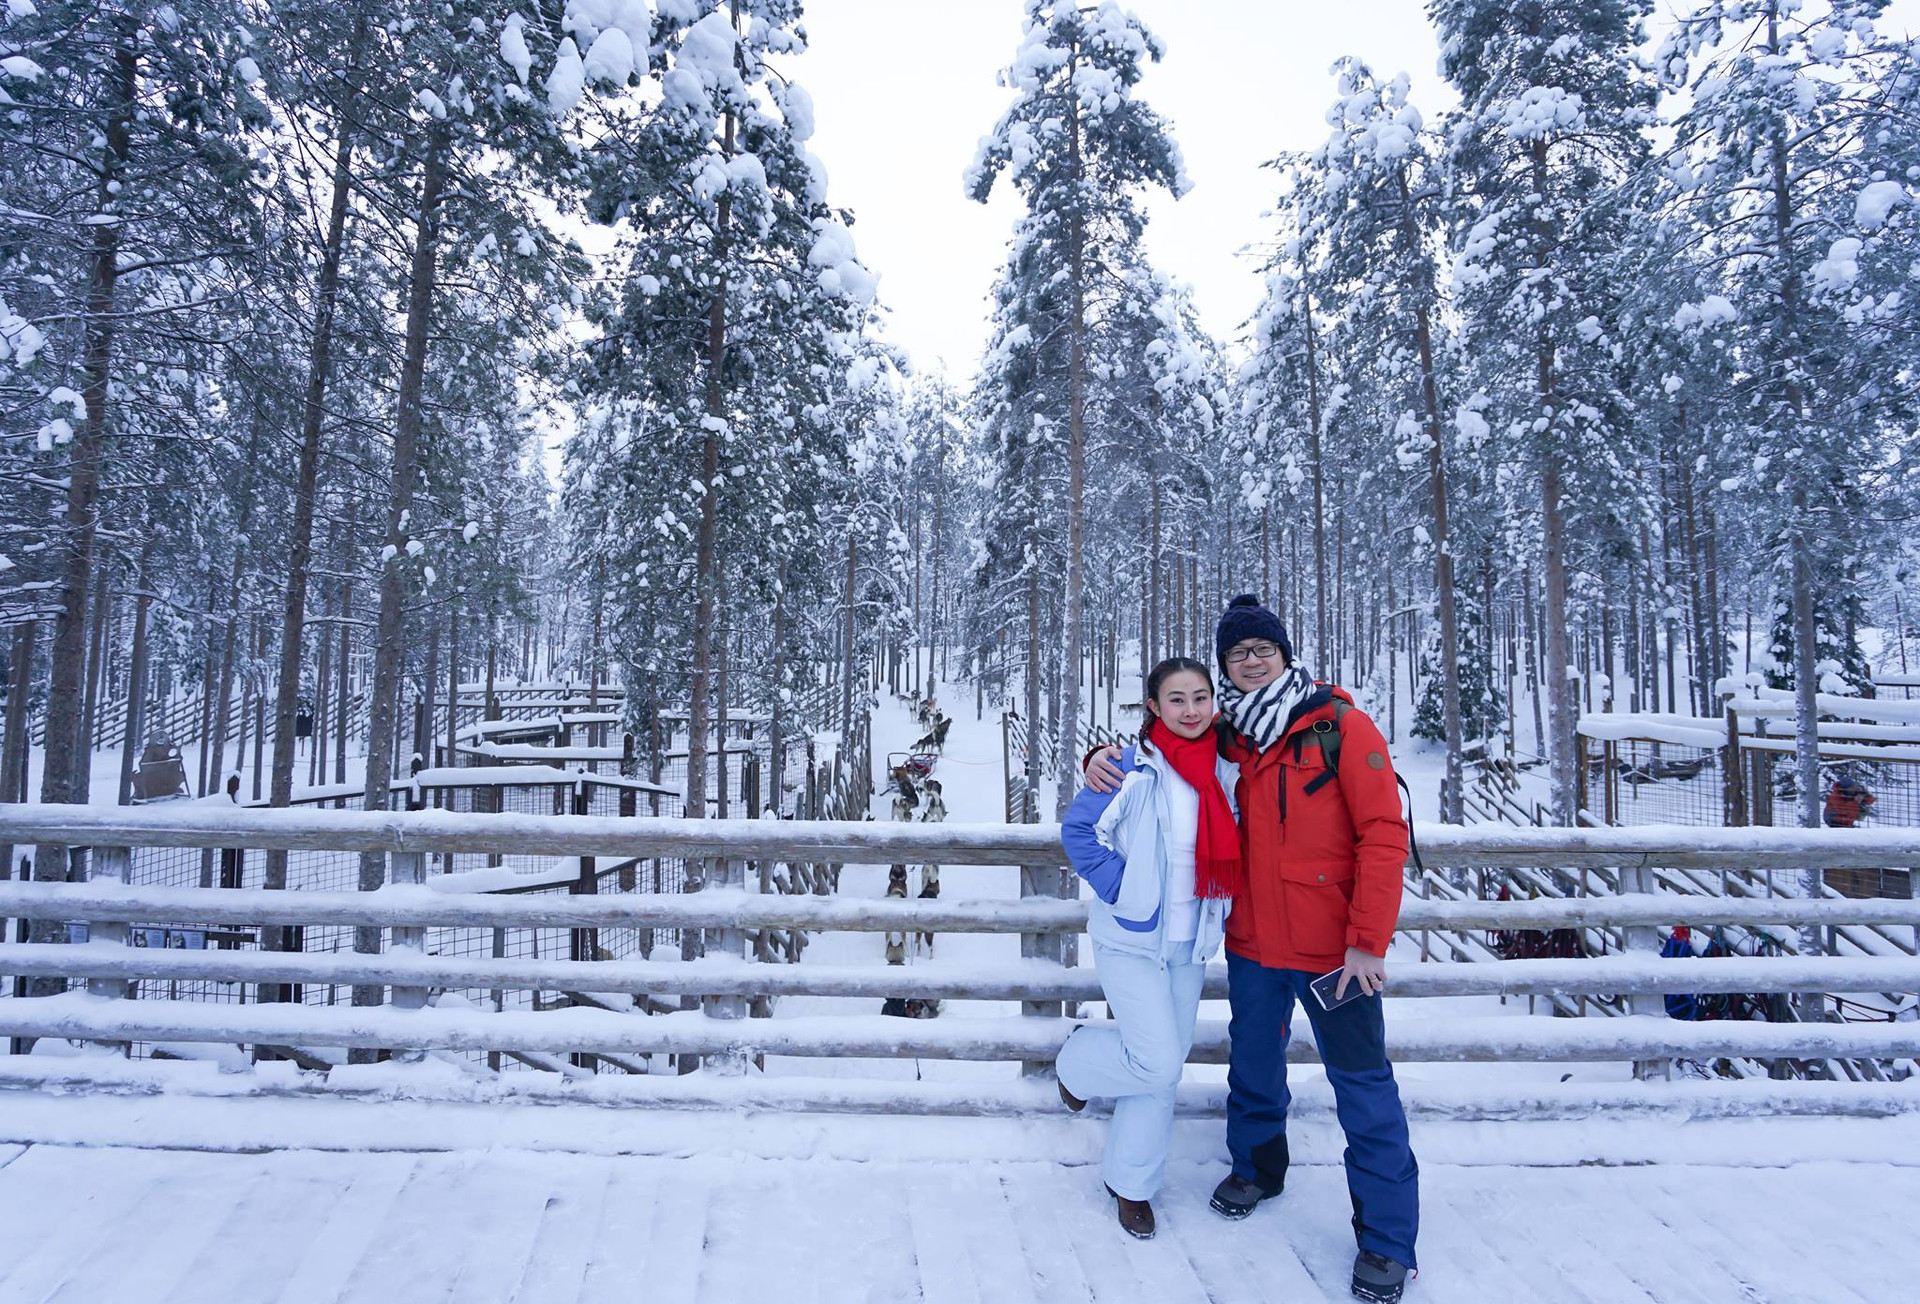 Giáng sinh đáng nhớ của du khách Việt tại Santa Claus, Phần Lan - 2